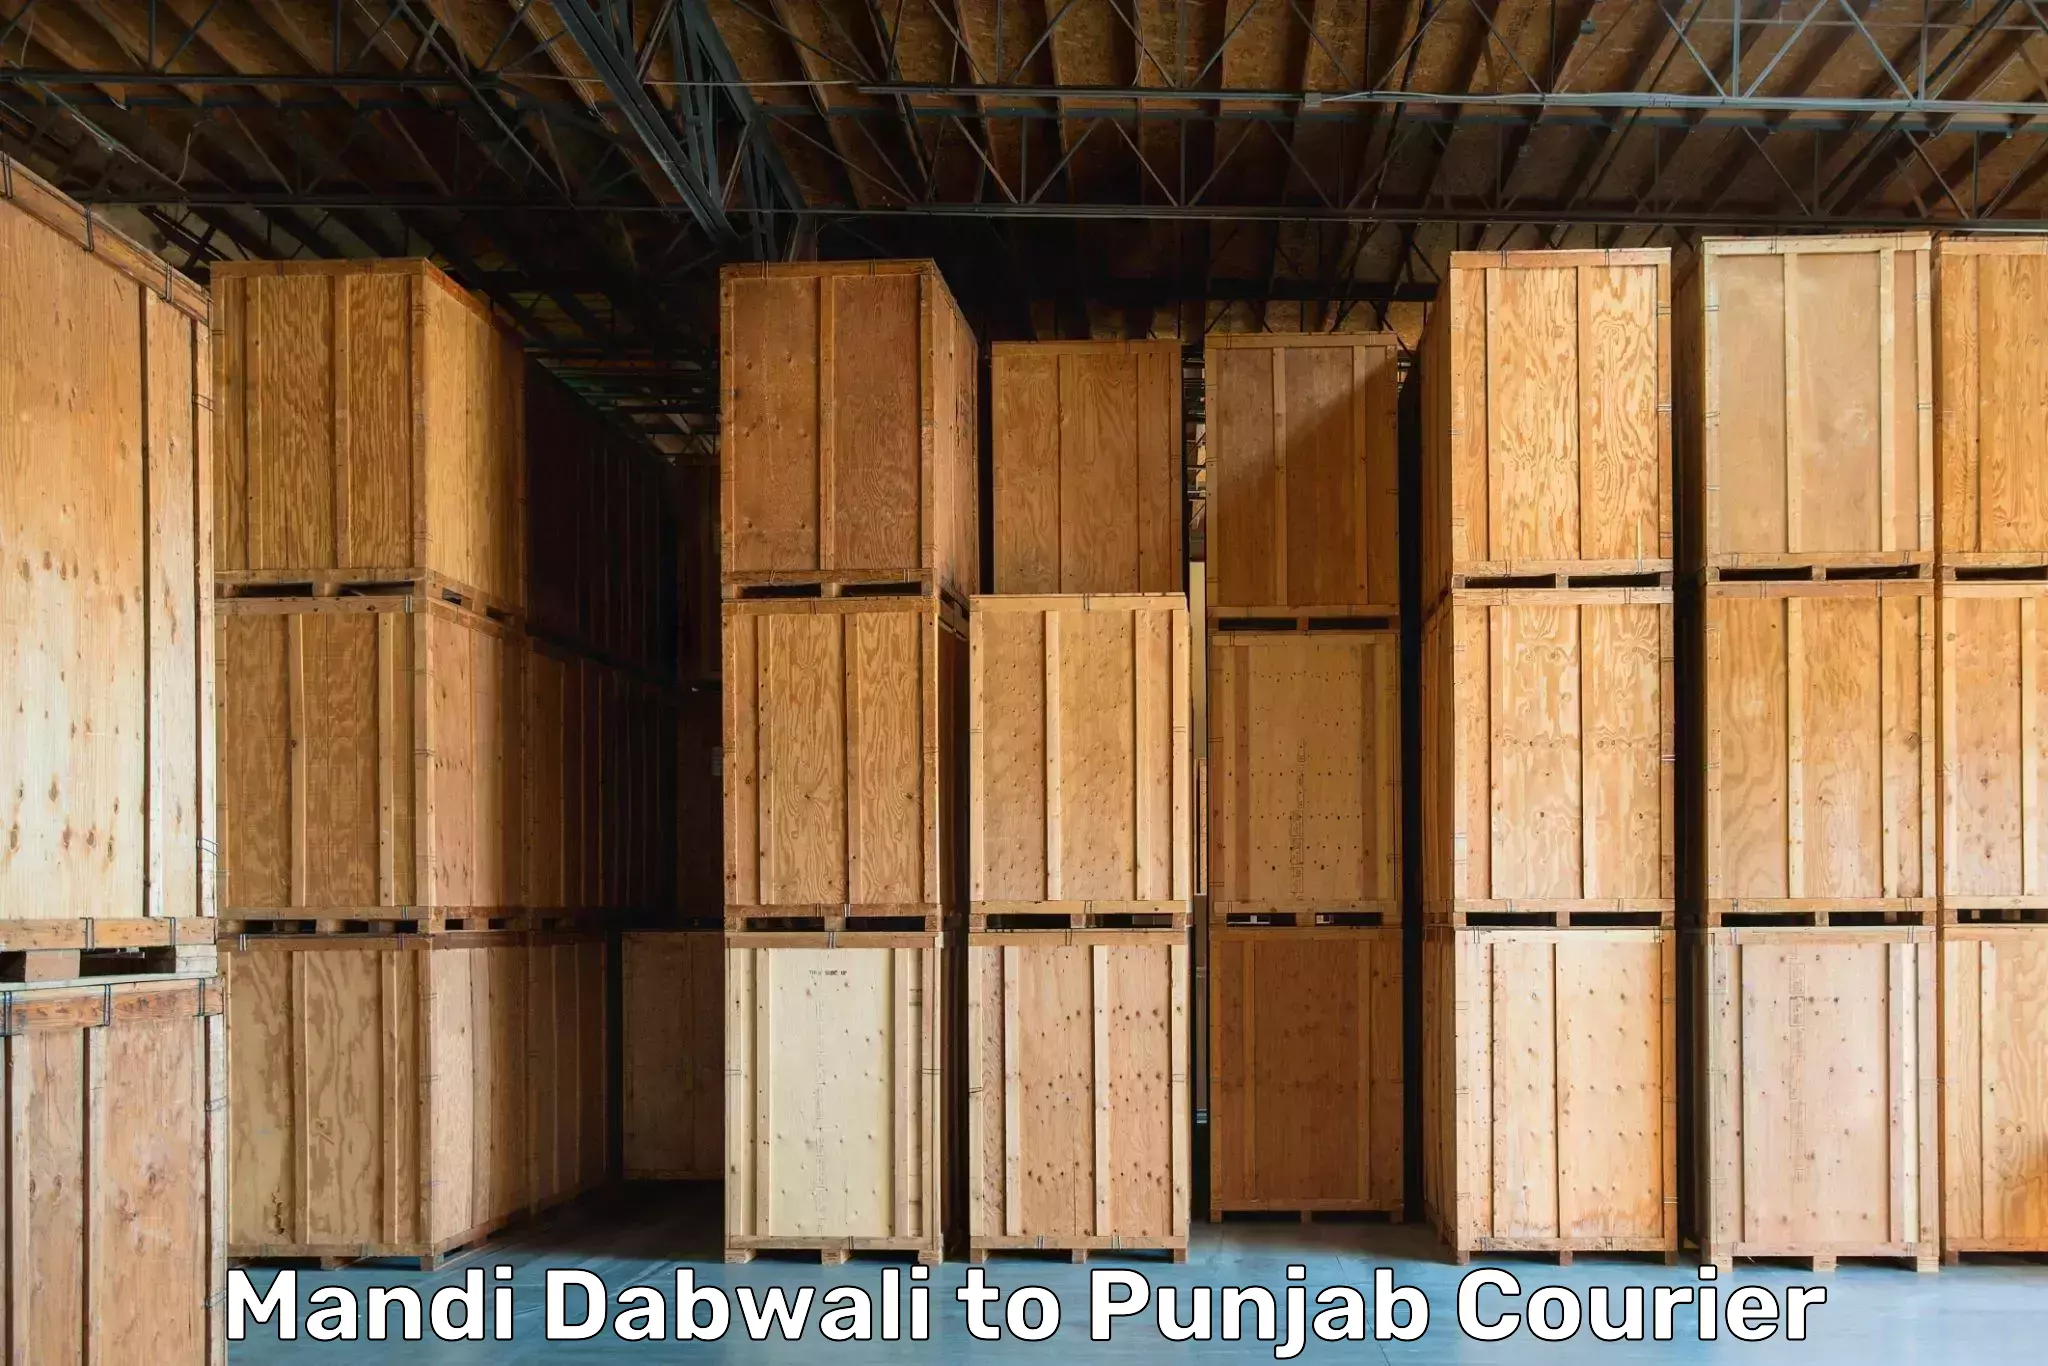 Furniture moving experts in Mandi Dabwali to Ajnala